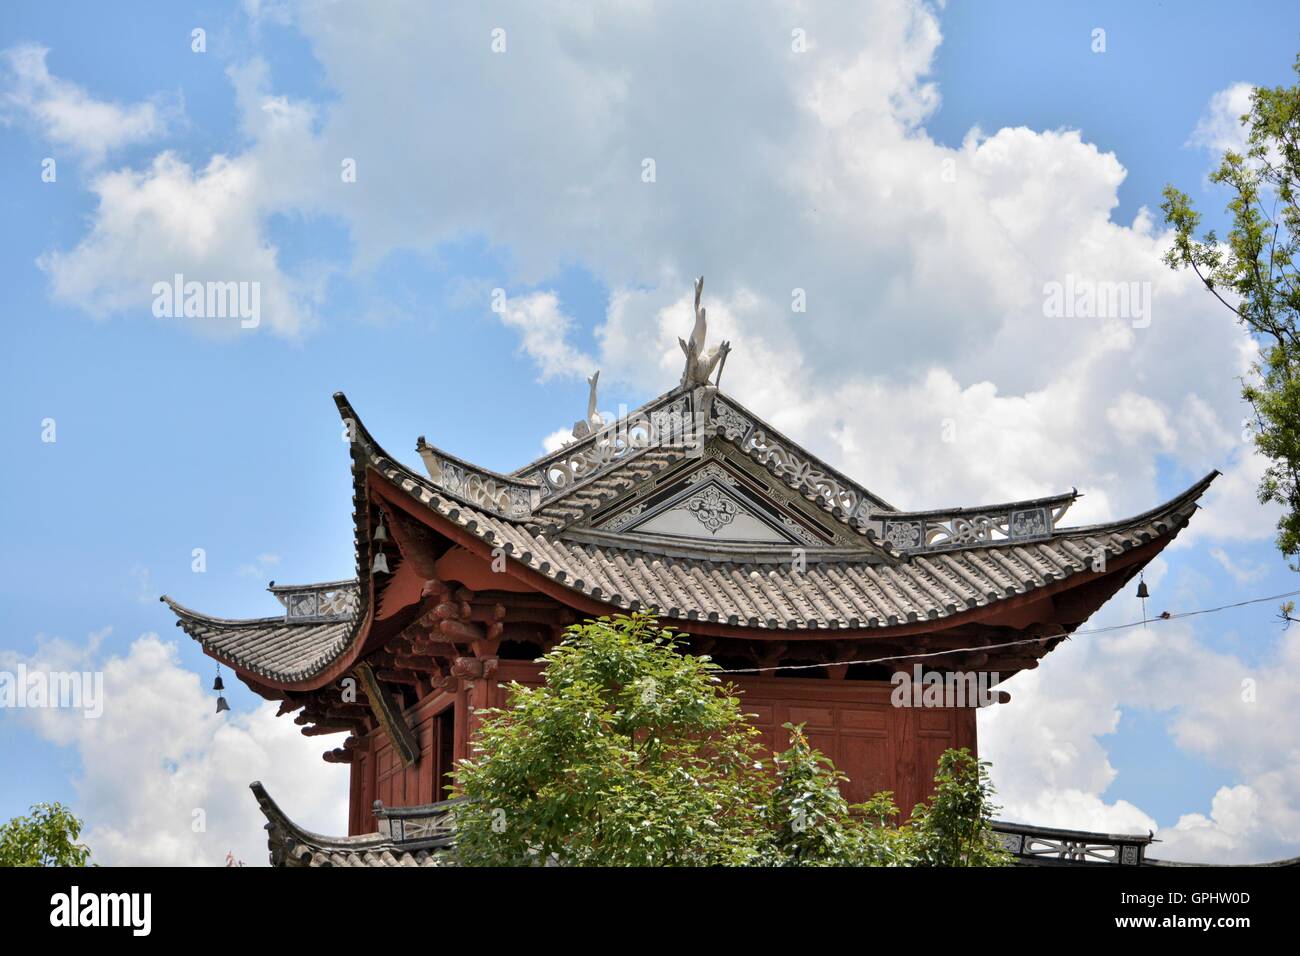 Antiguo edificio tradicional del suroeste de China, en el condado de Dali, provincia de Yunnan. Foto de stock